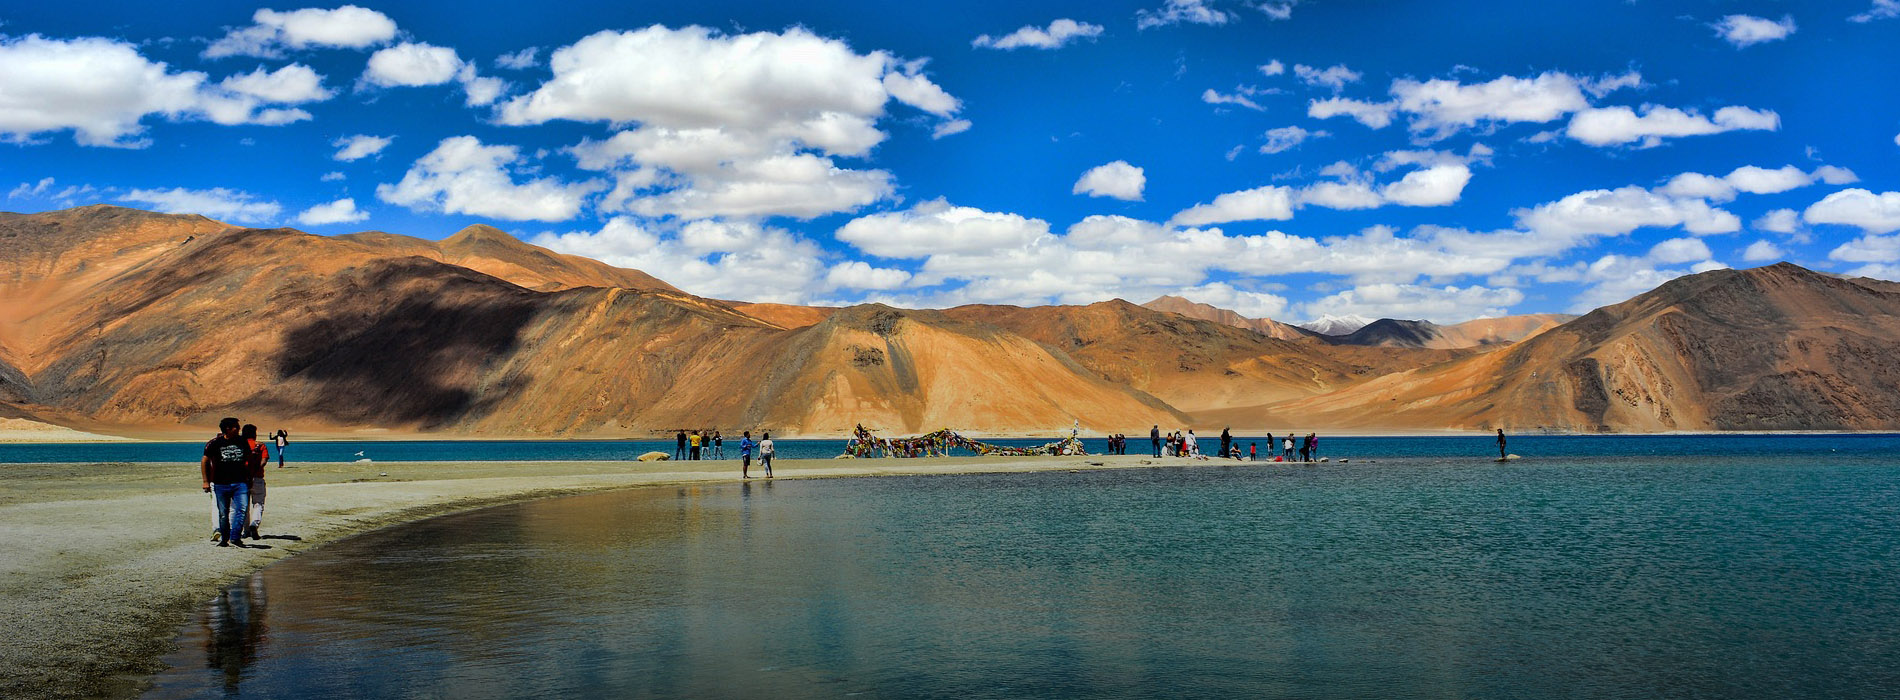 Amazing Leh & Ladakh